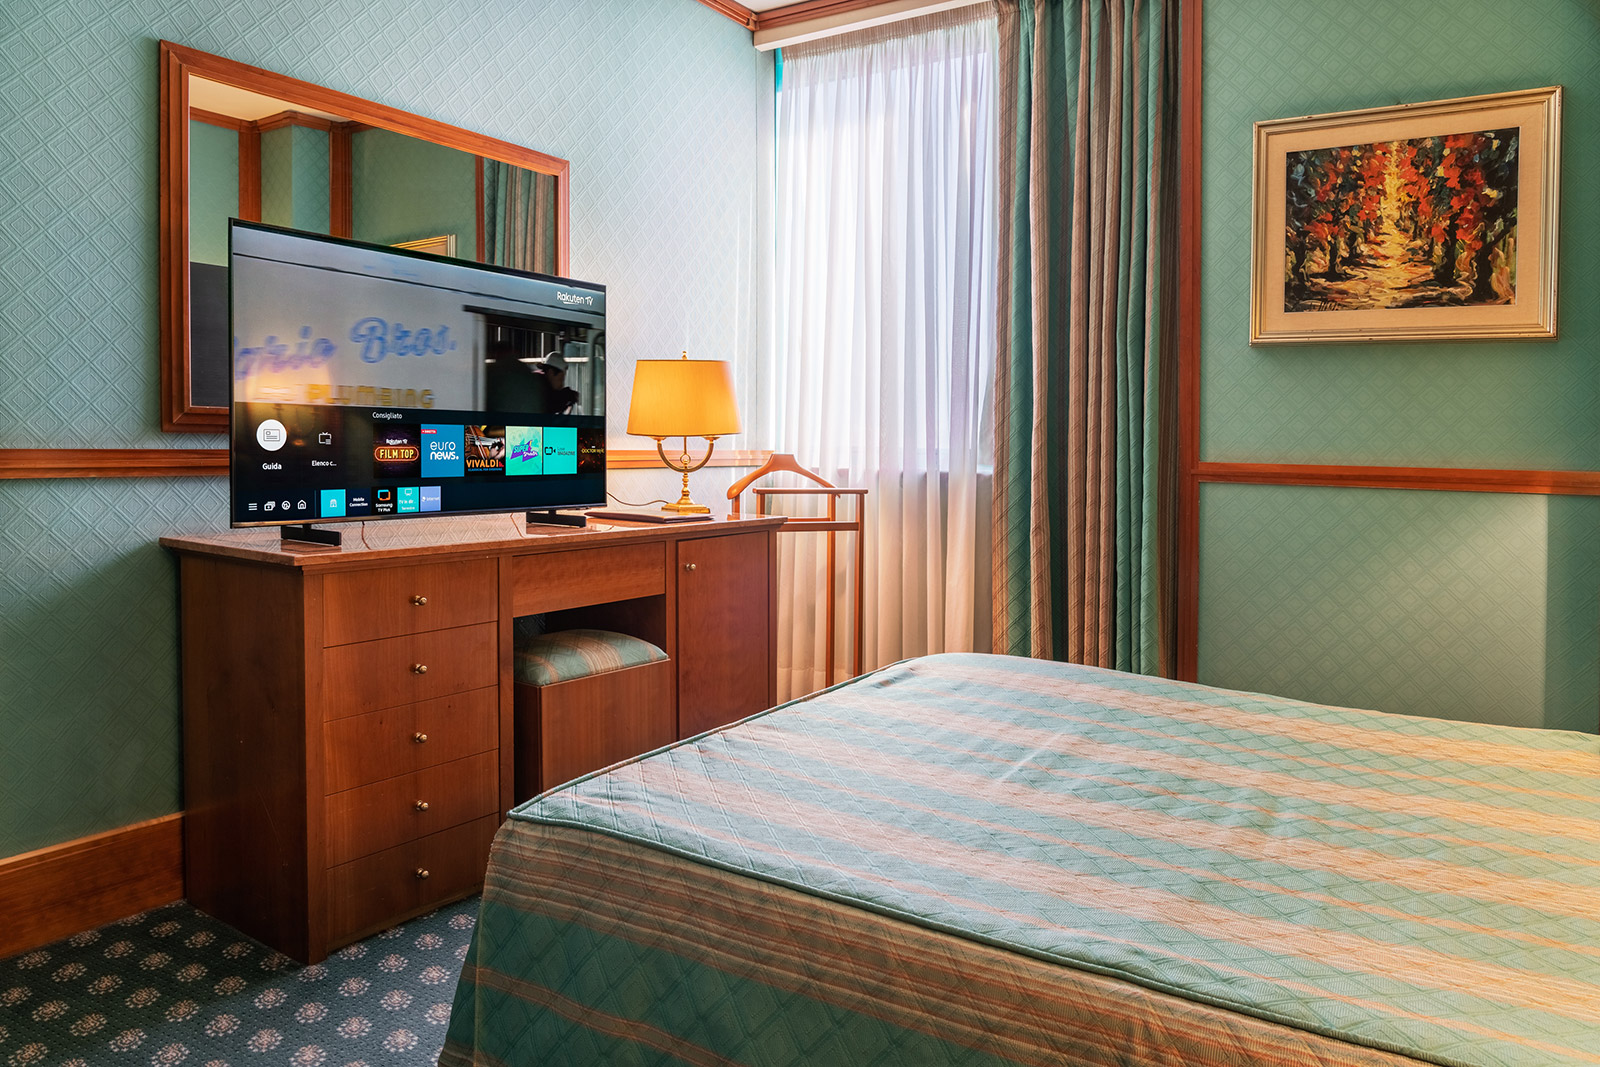 Hotel TV Samsung in una camera del Grand Hotel Duca D'Este di Tivoli Terme